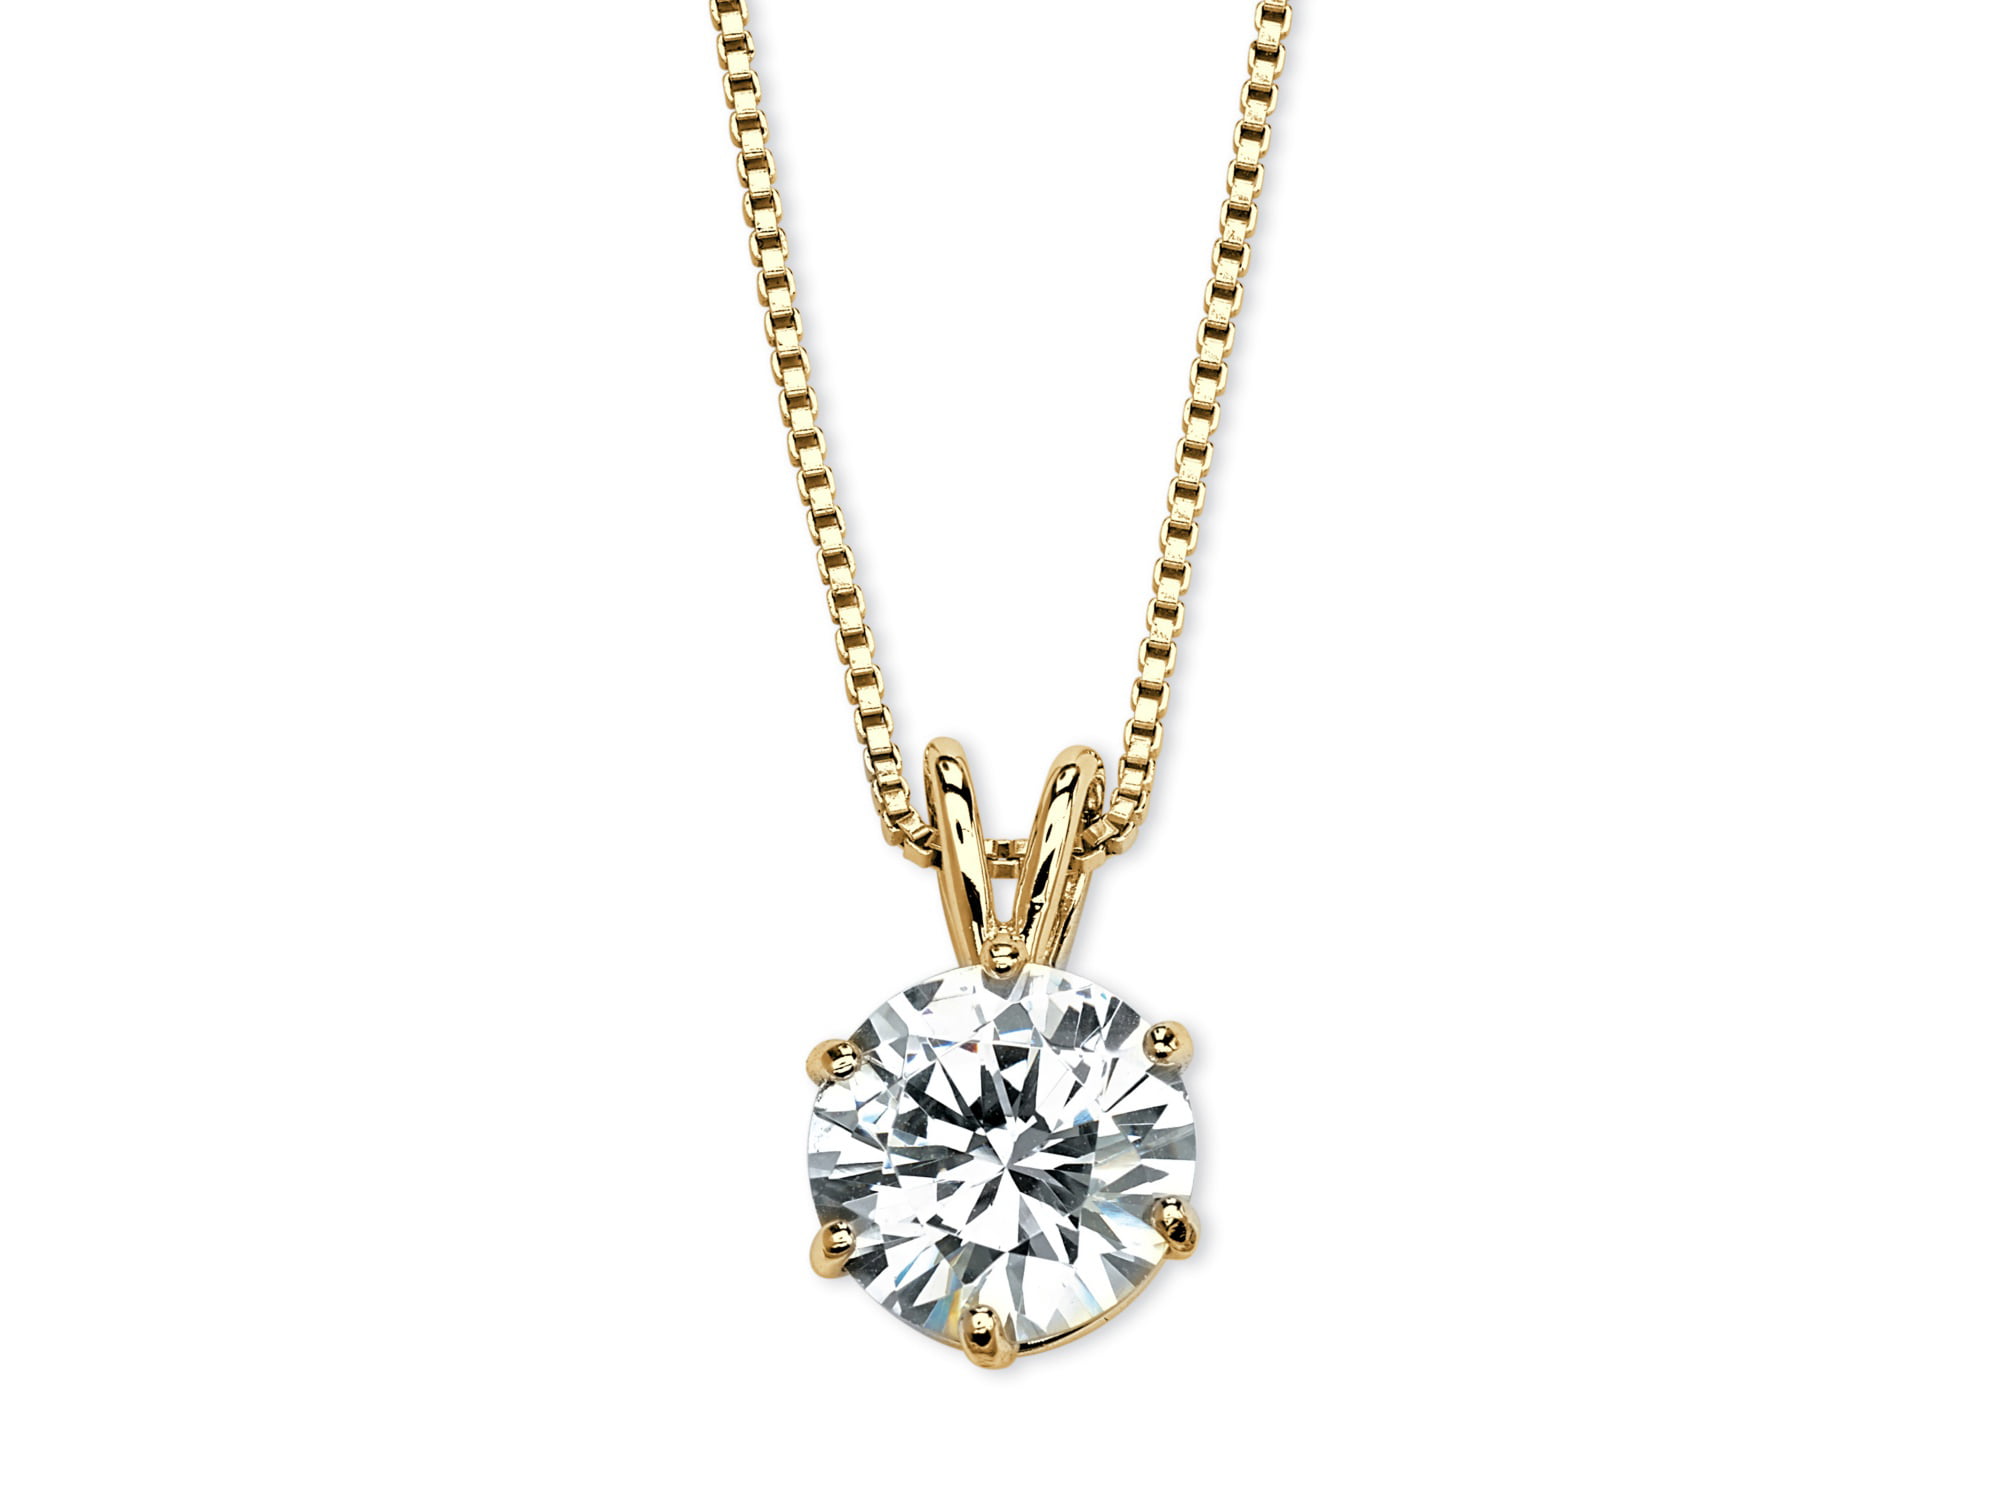 Mia Diamonds 10k Solid White Gold 1mm Box Necklace Chain 30 30in x 1mm